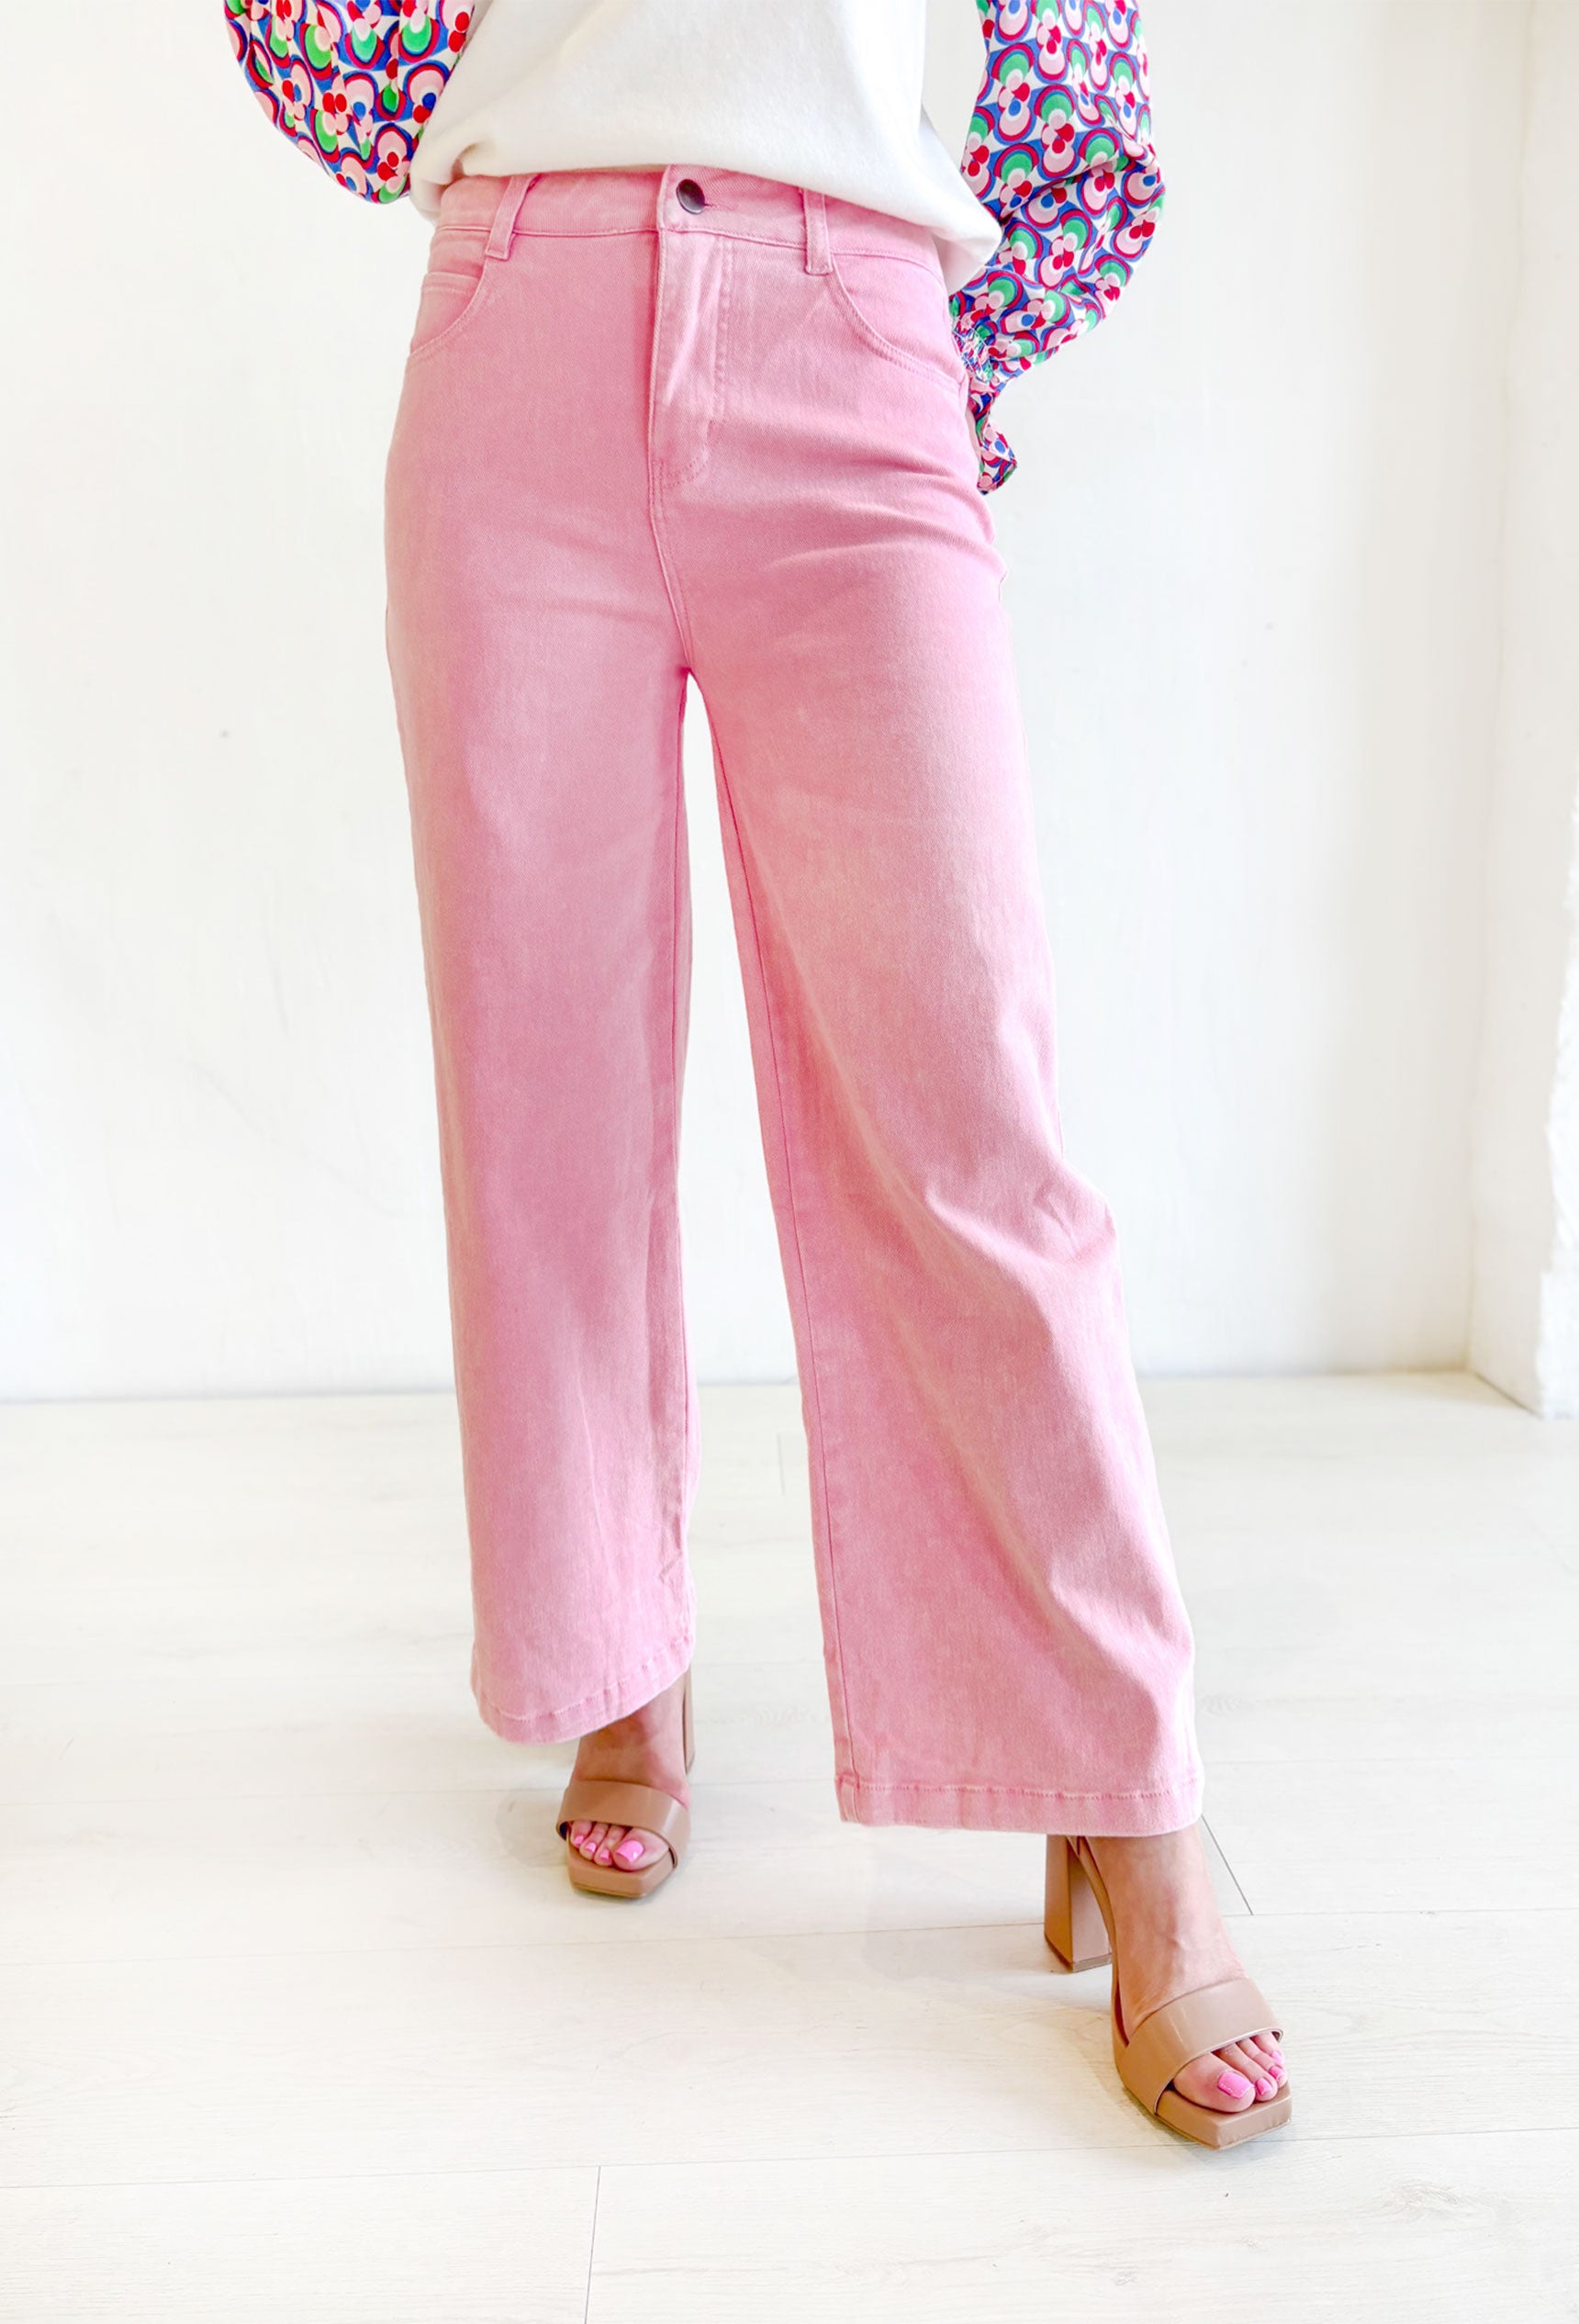 Trendiest Around Pink Flare Denim, pink flare pants